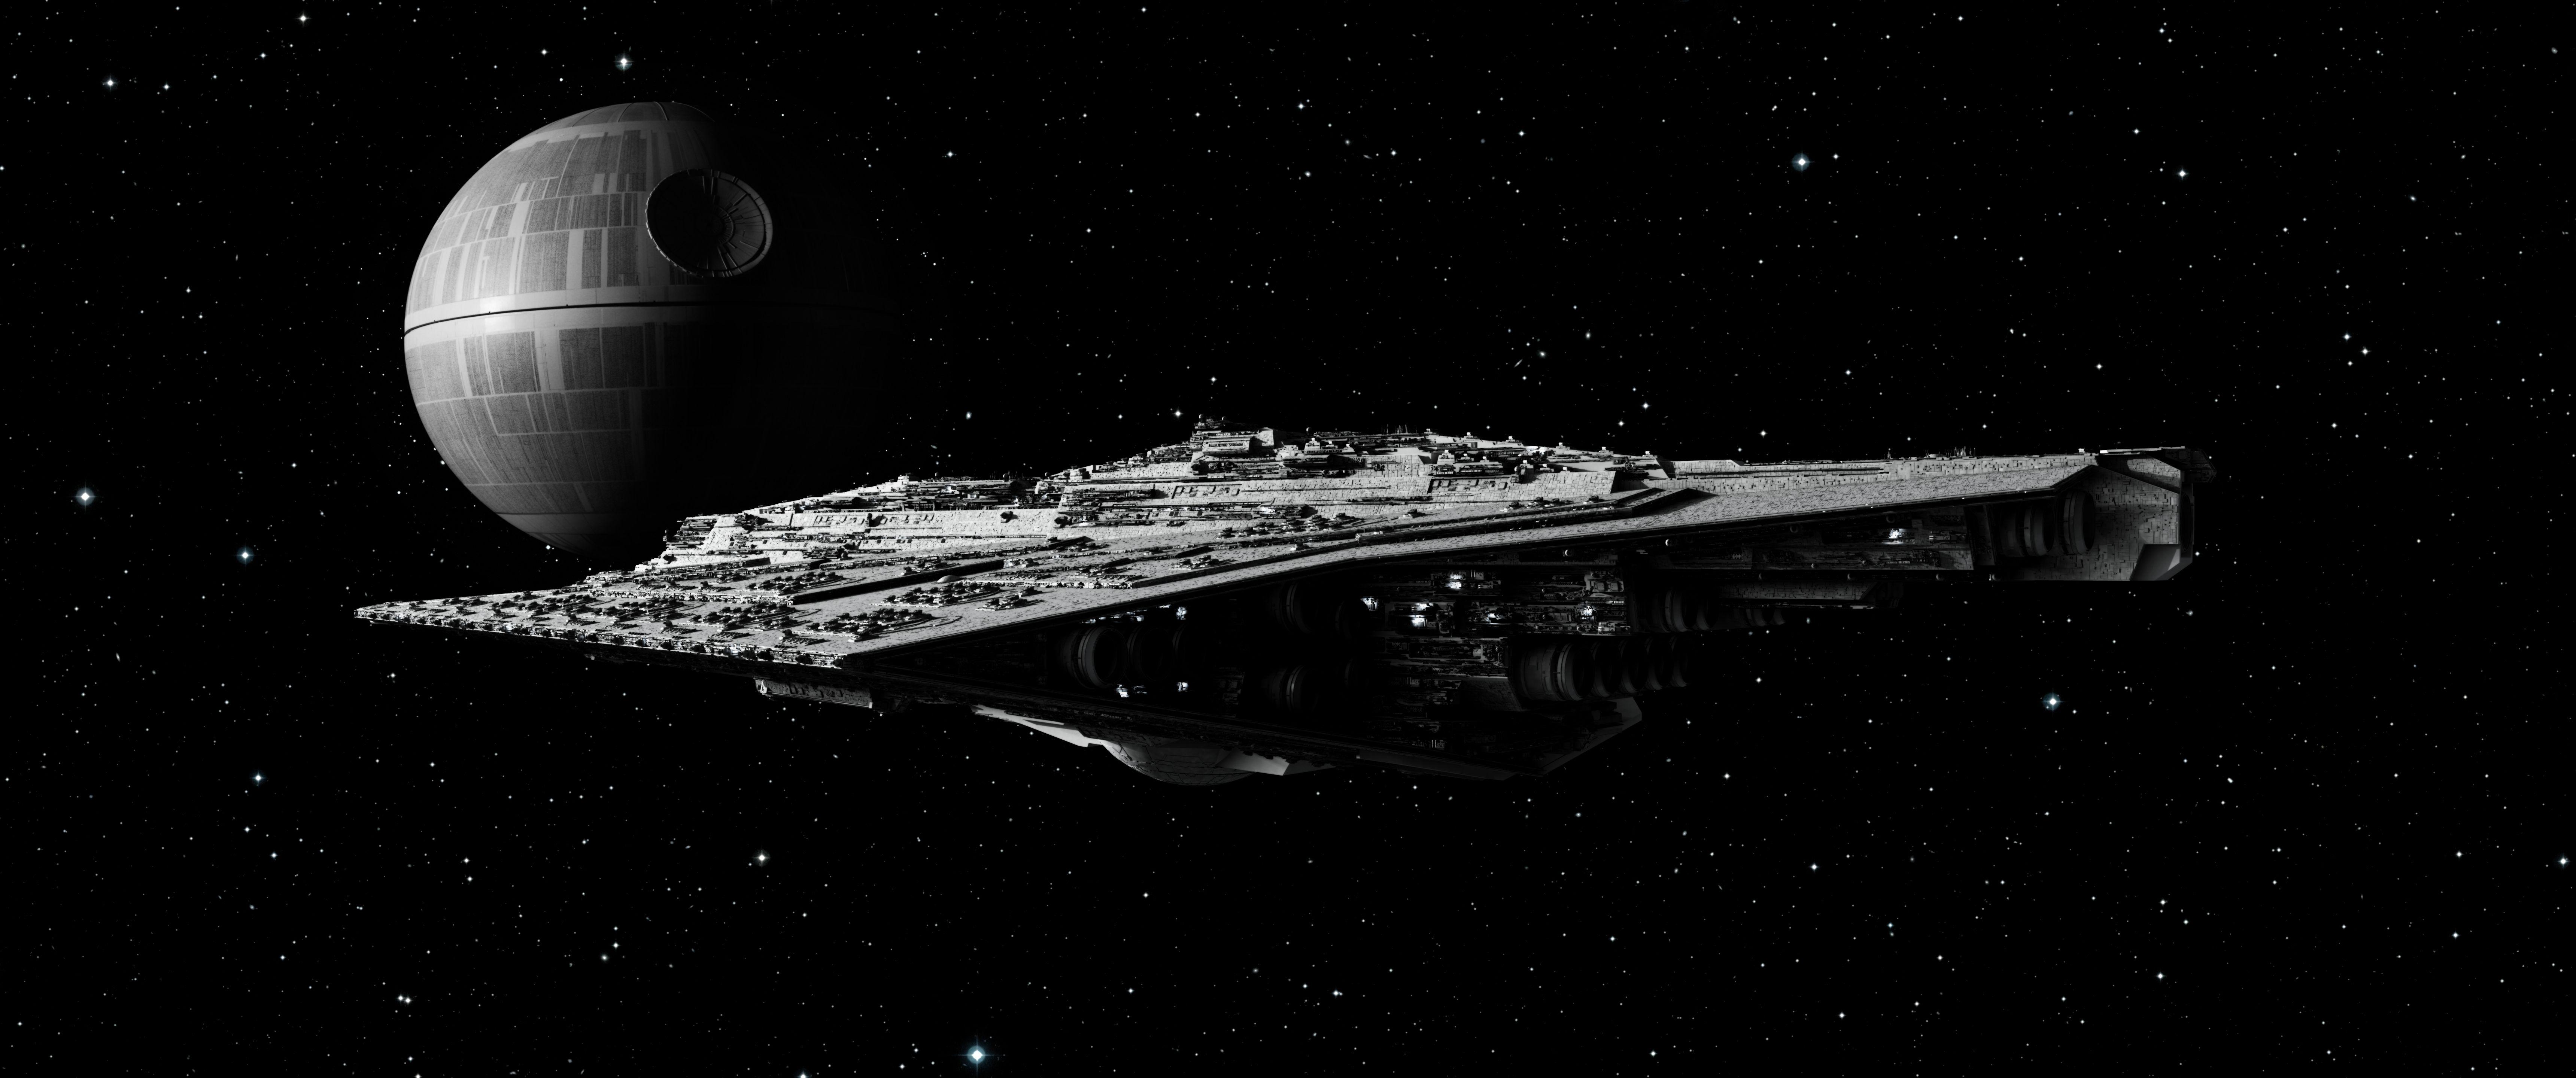 star wars eclipse class super star destroyer